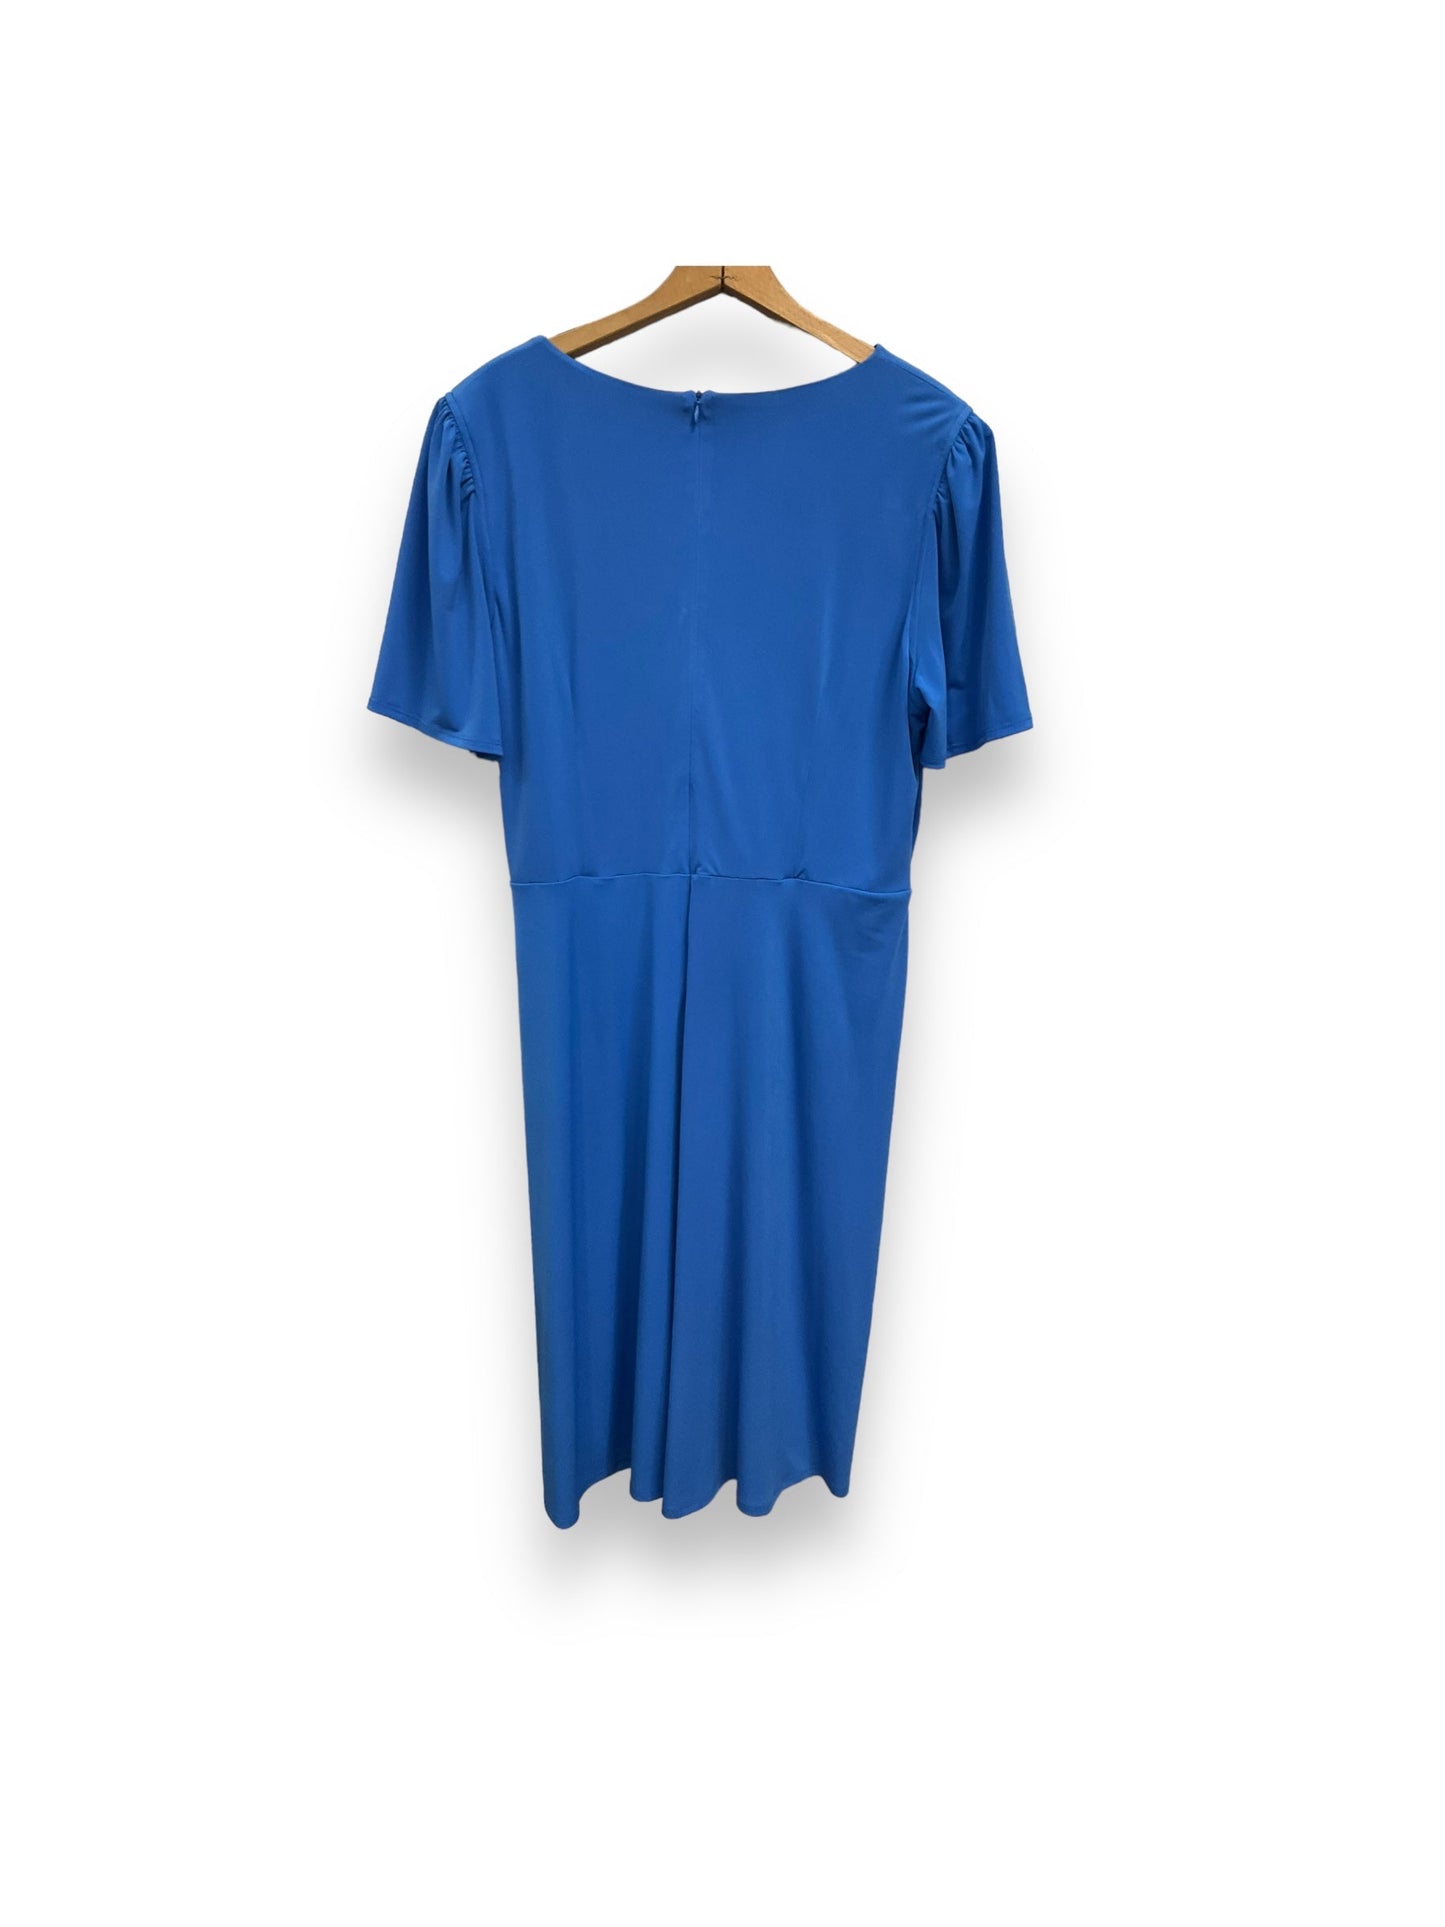 Dress Casual Midi By Liz Claiborne  Size: Xl